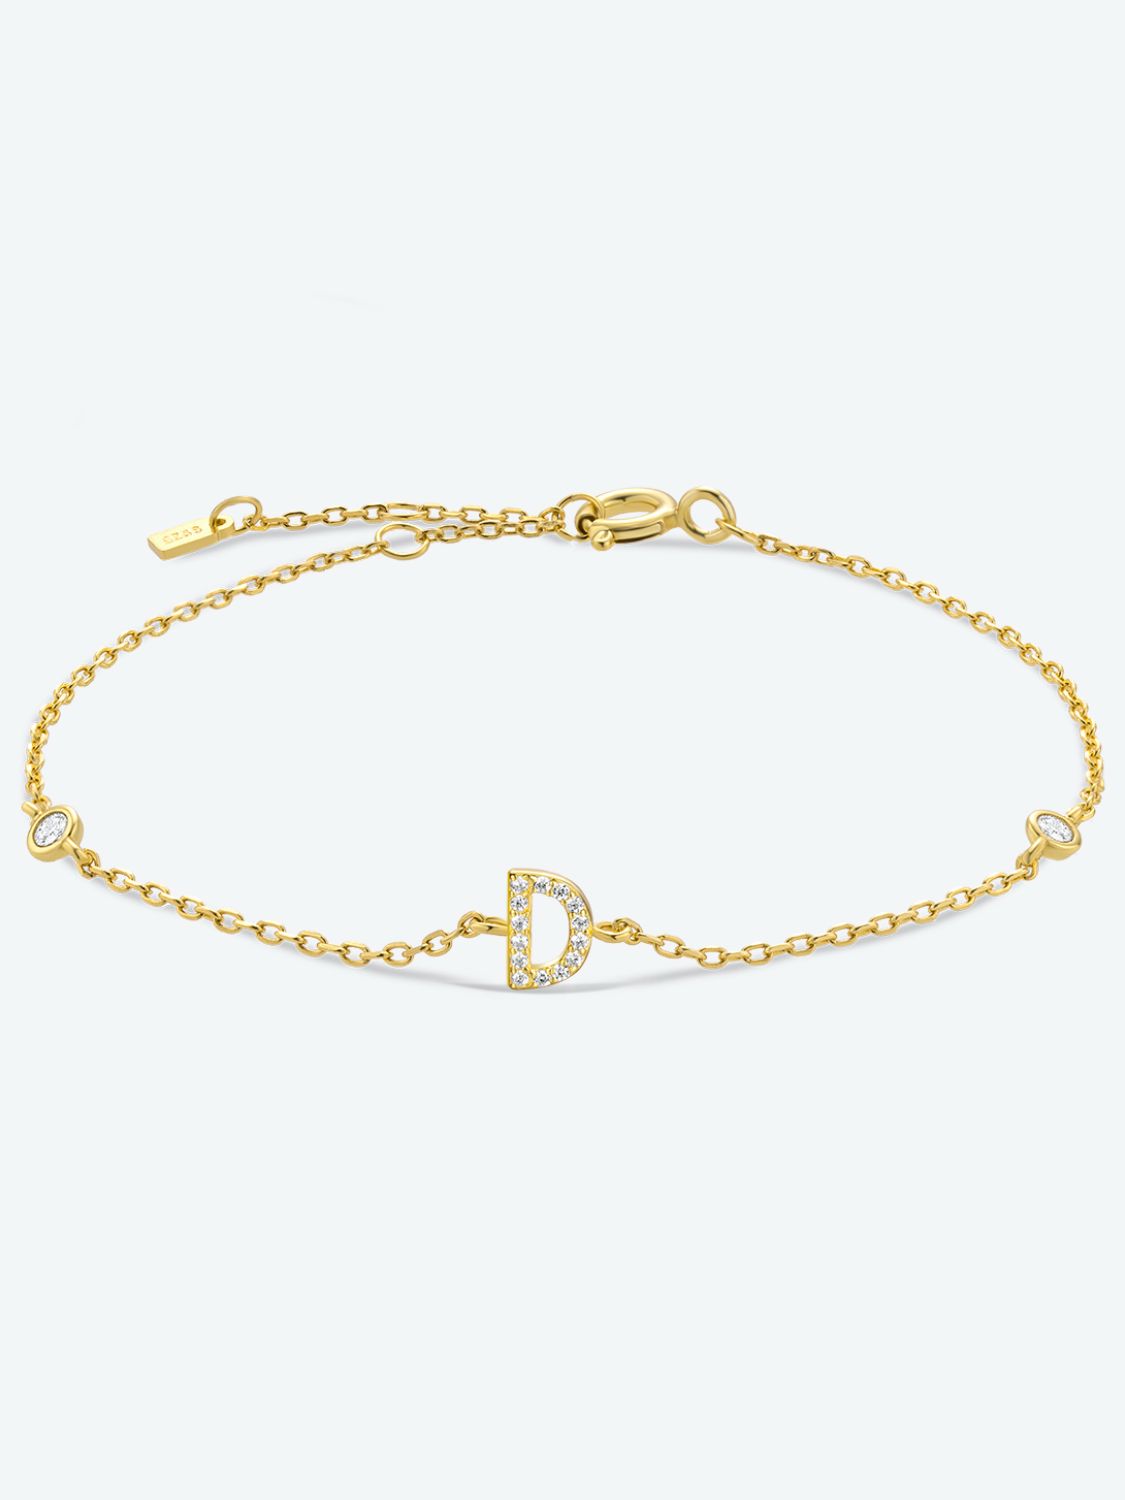 A To F Zircon 925 Sterling Silver Bracelet - D-Gold / One Size - Women’s Jewelry - Bracelets - 19 - 2024